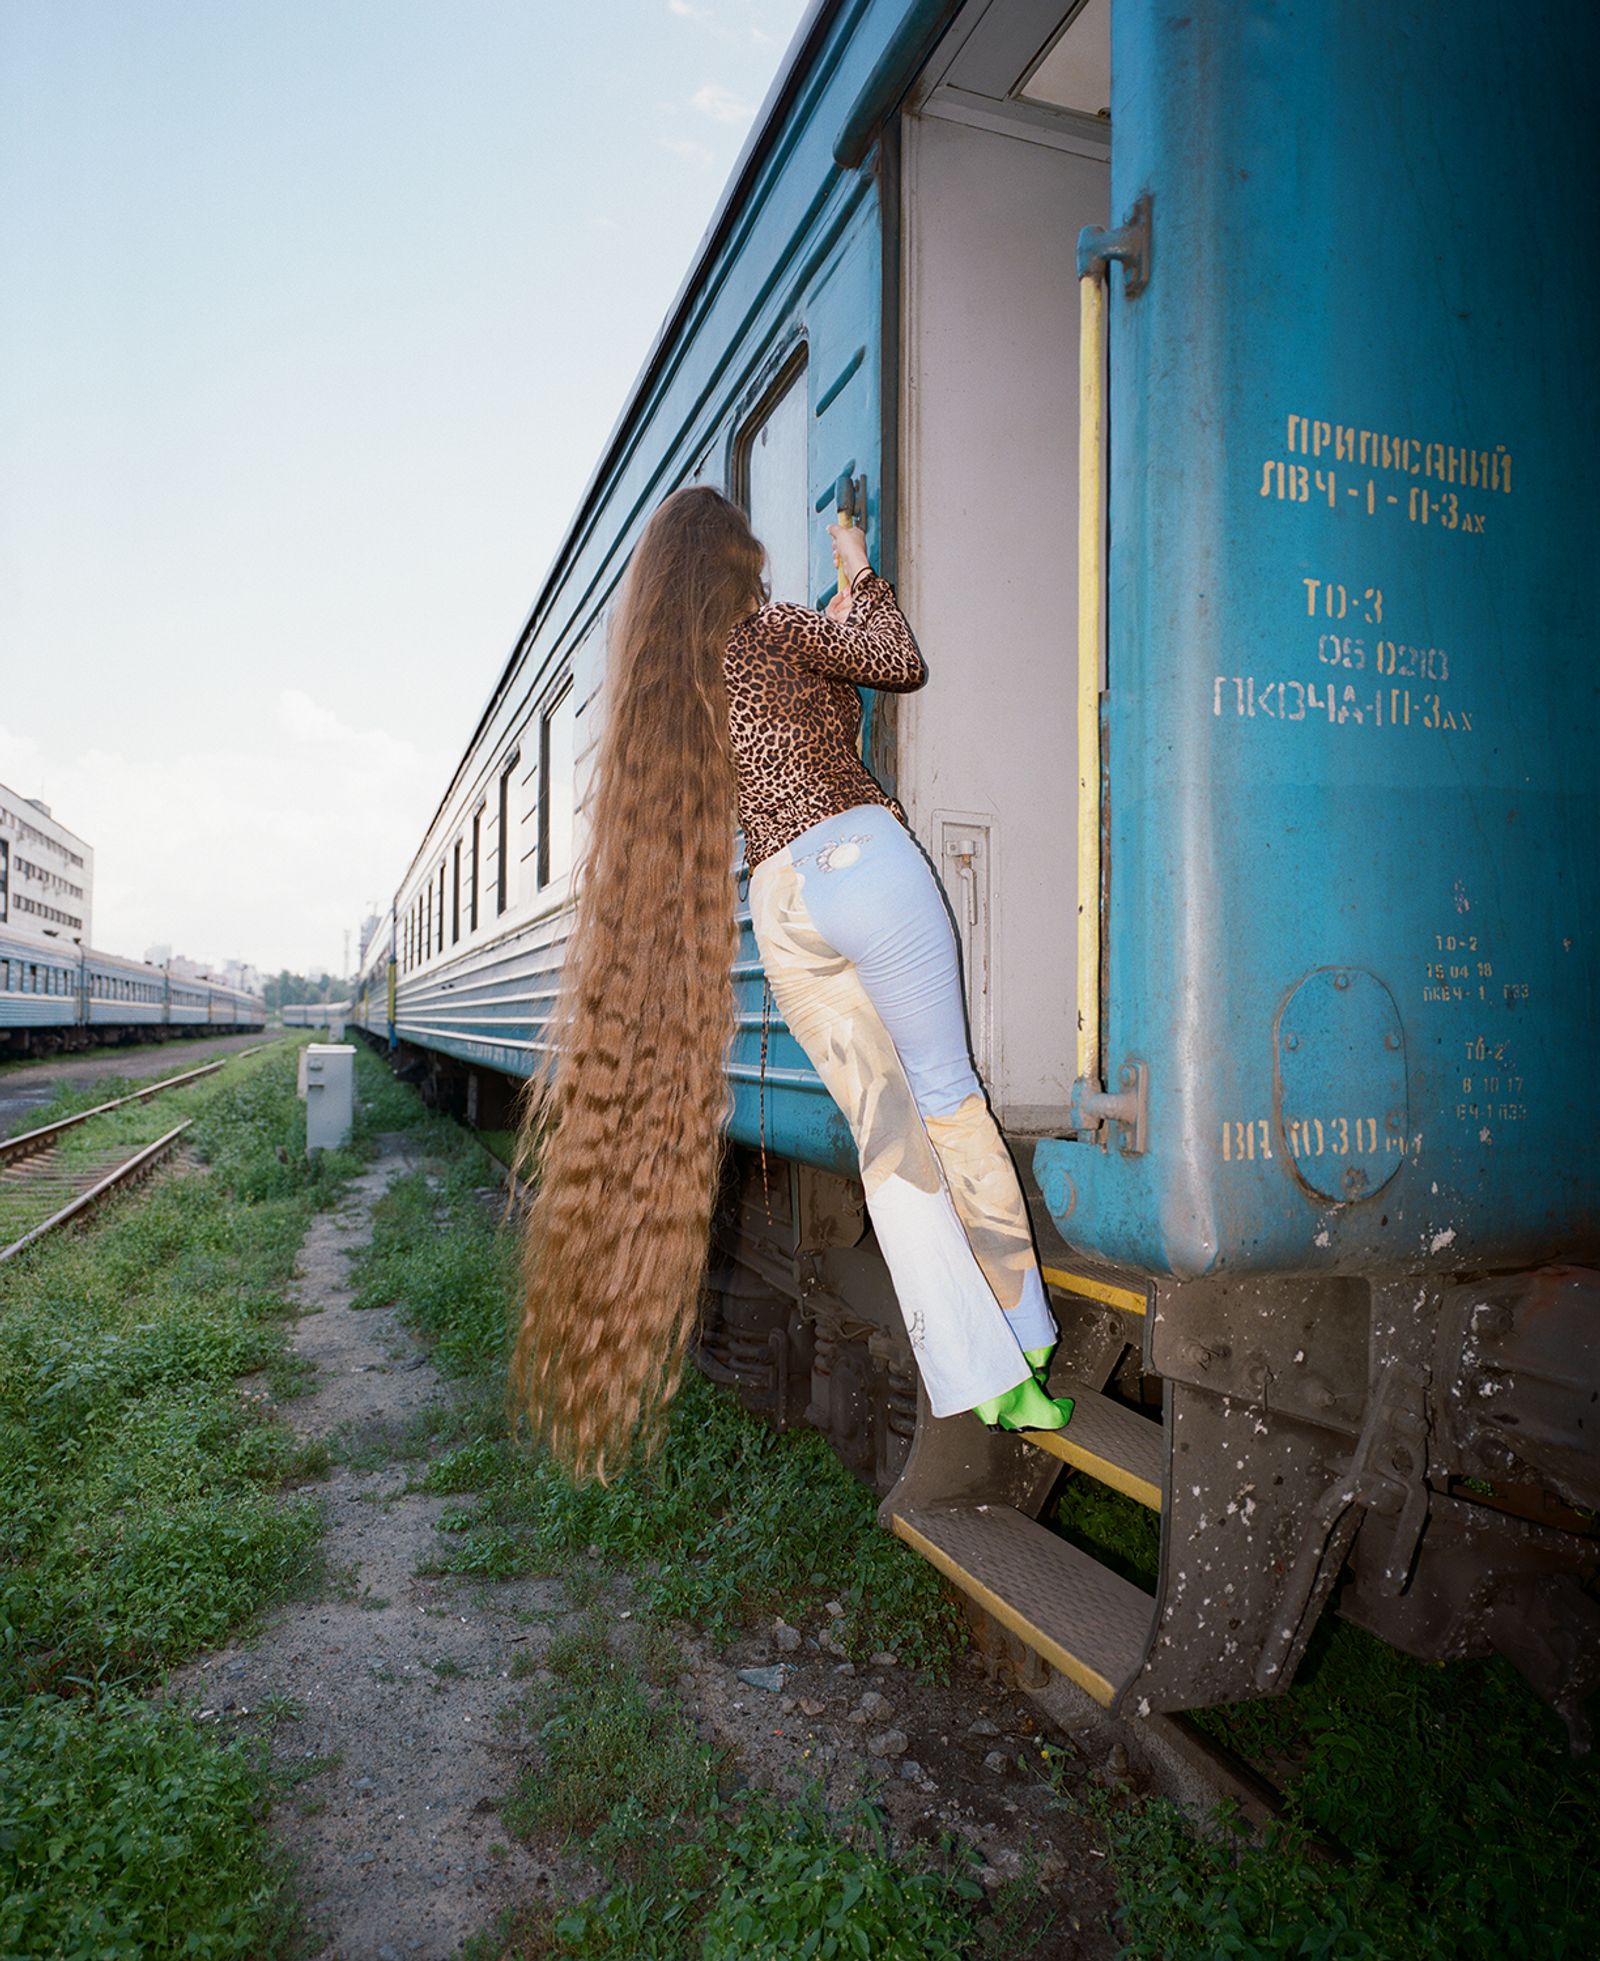 © Julie Poly - Image from the Ukrzaliznytsia photography project